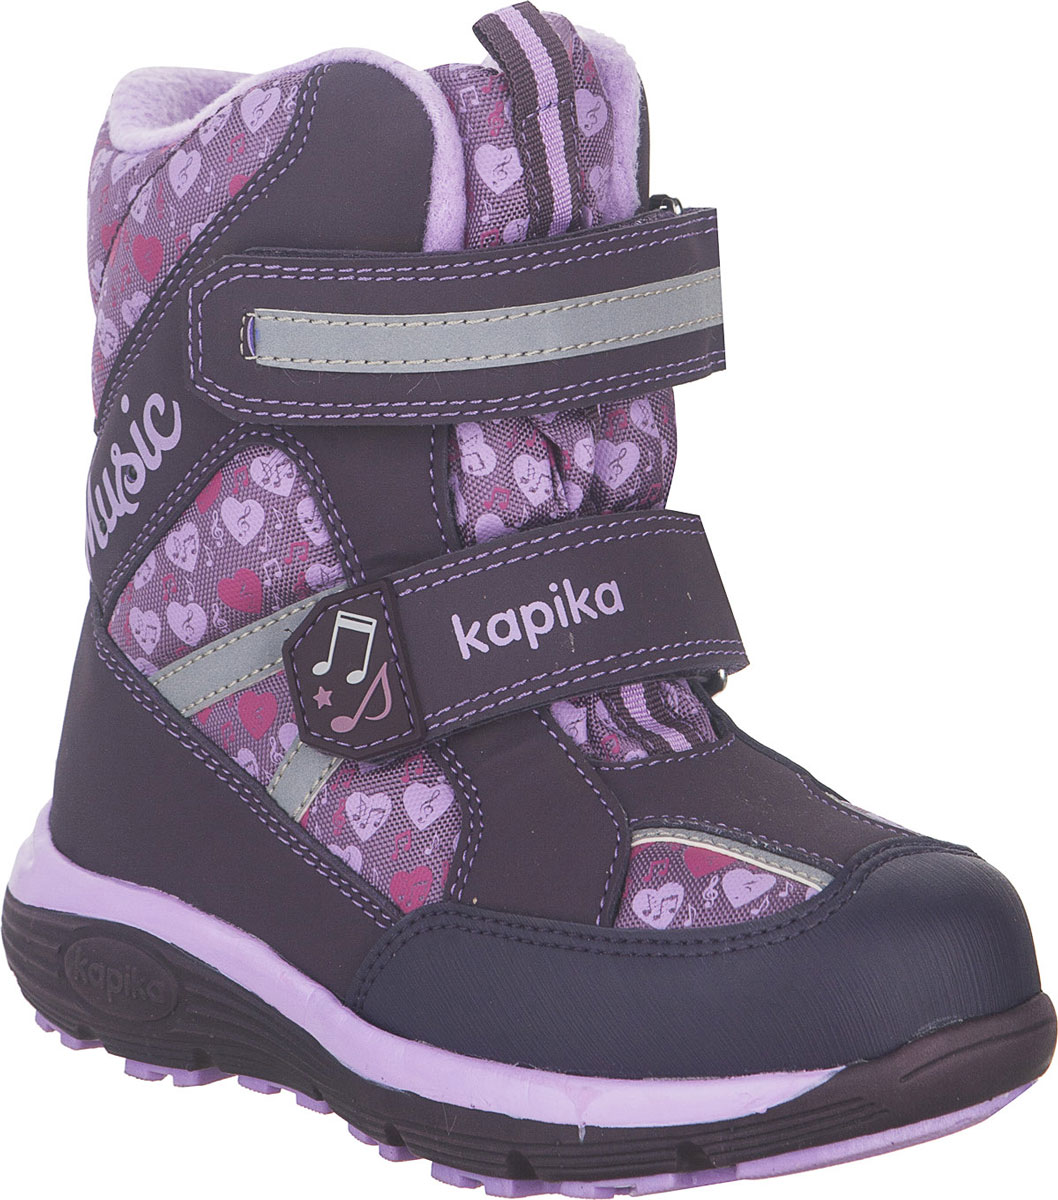 Ботинки для девочки Kapika, цвет: фиолетовый, сиреневый. 43215-2. Размер 32